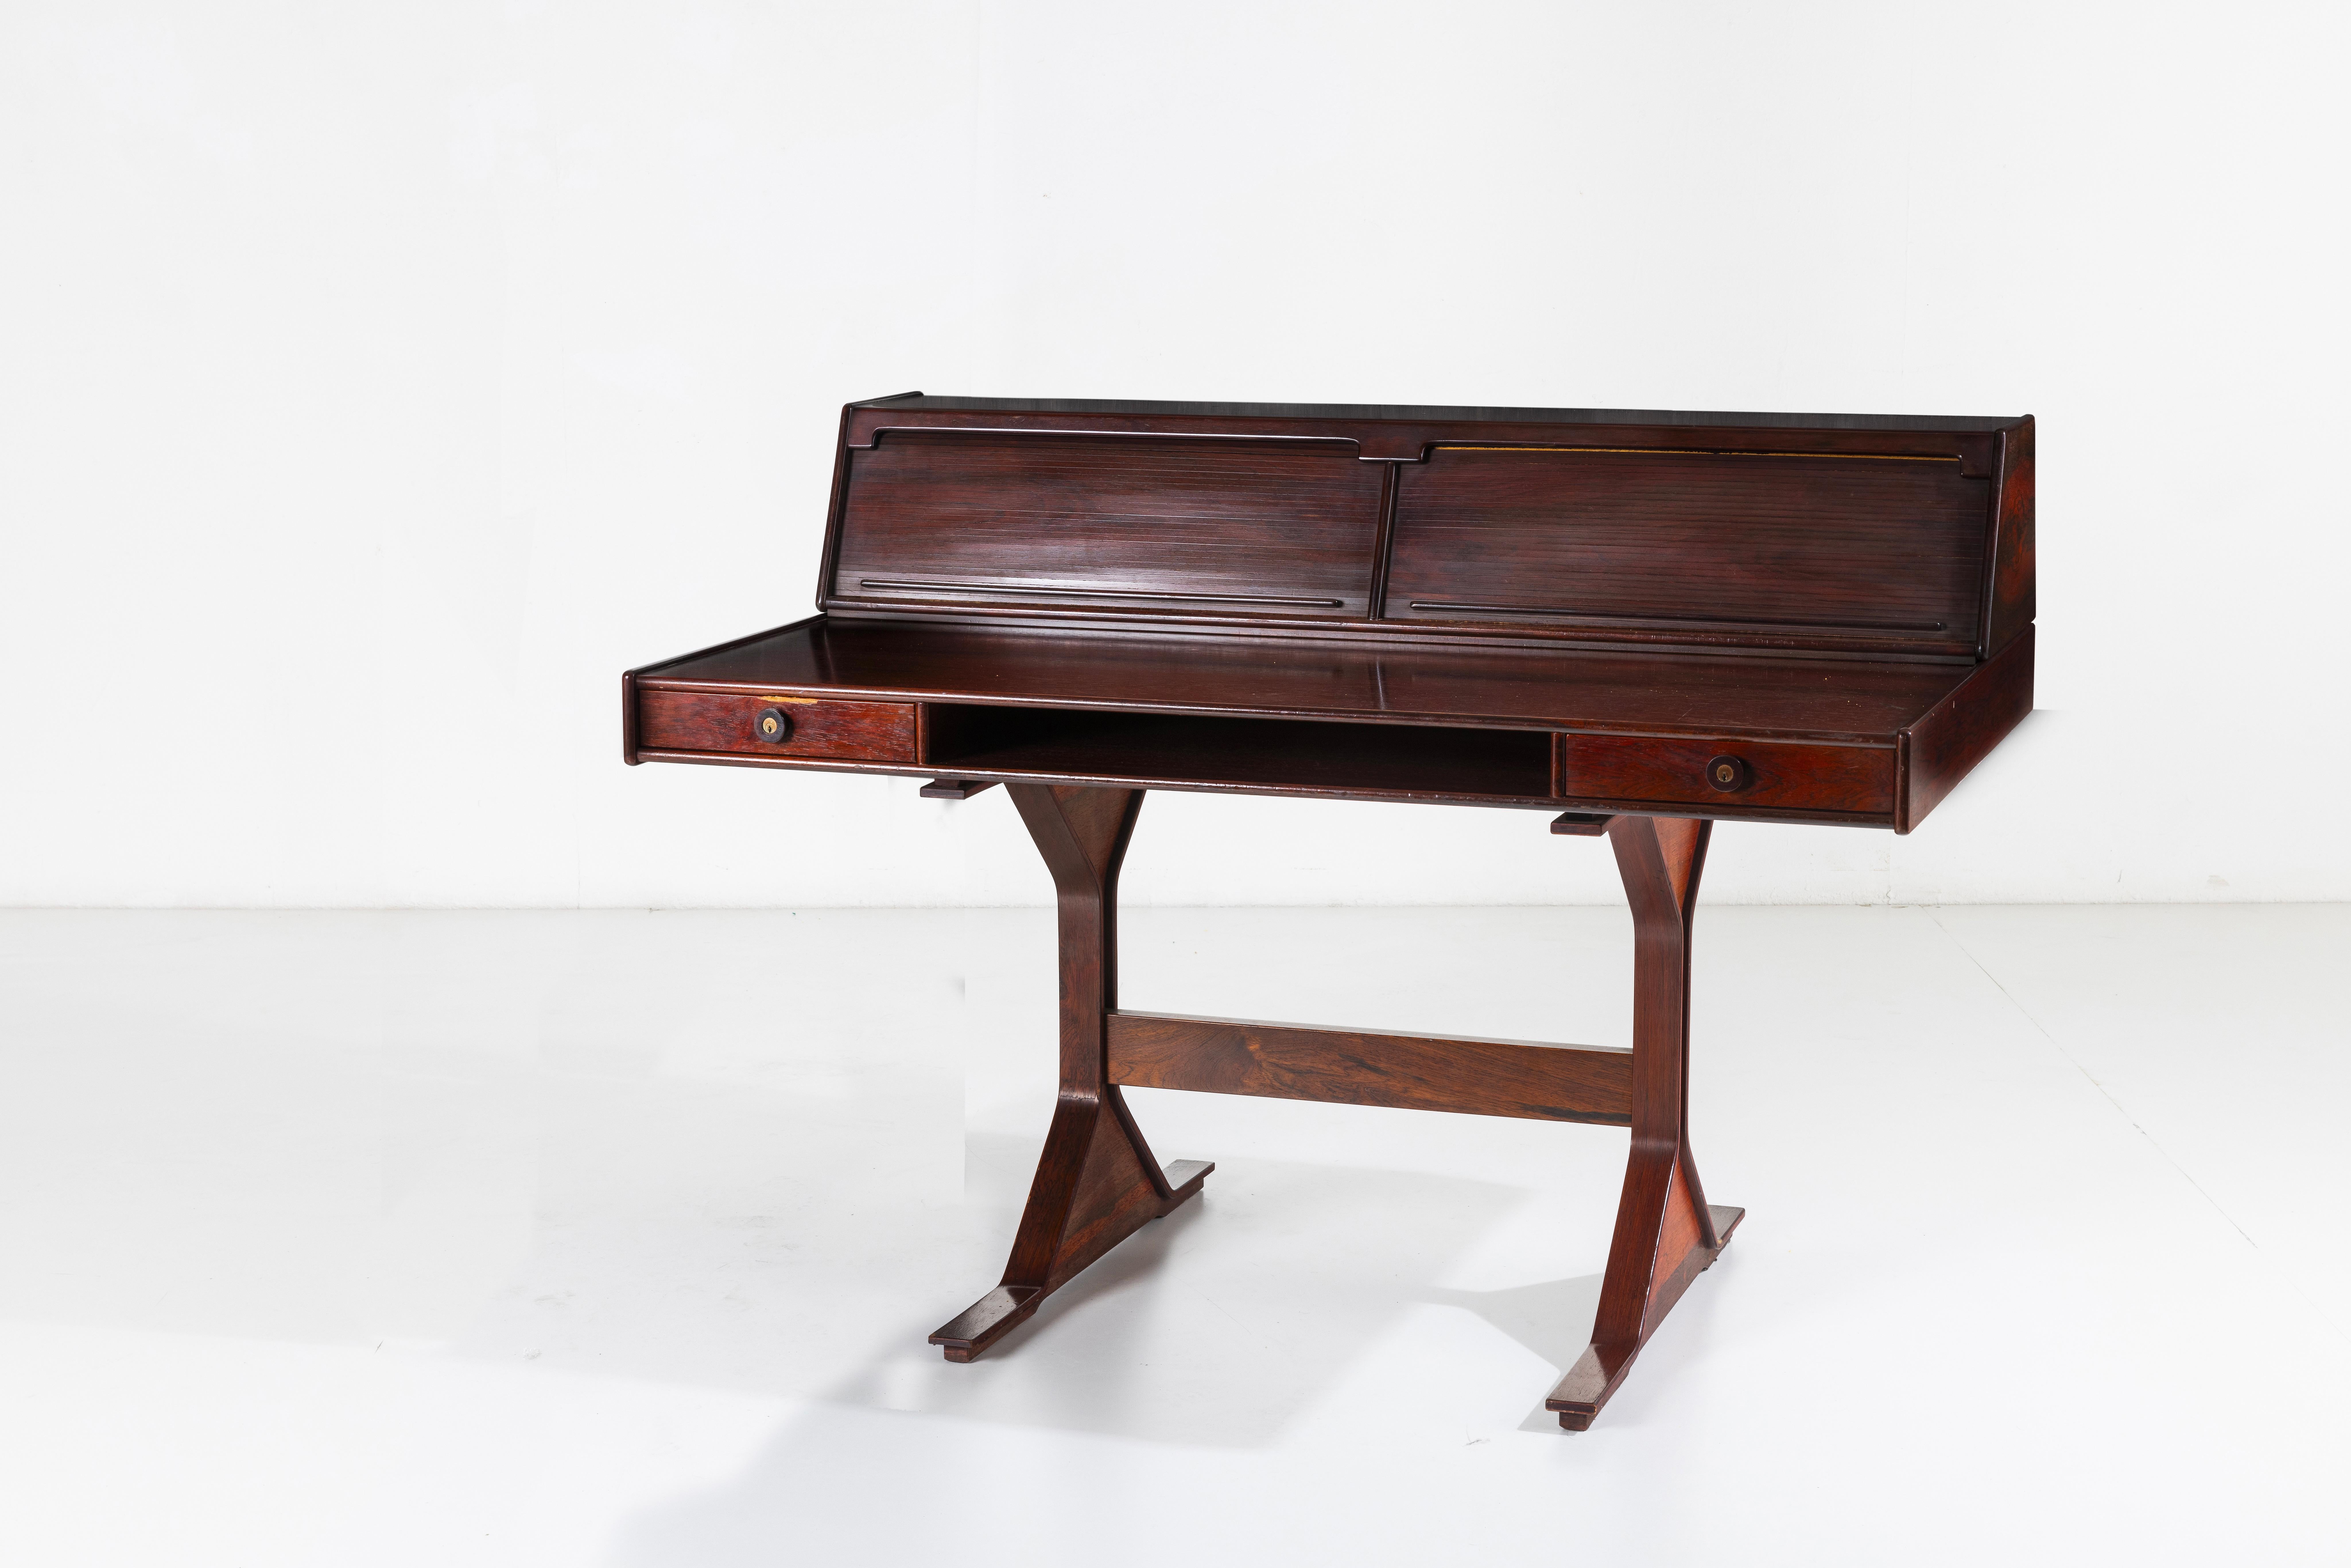 Eleganter Schreibtisch Mod. 530 von Gianfranco Frattini mit Struktur, Stützen und Platte aus Holz. Die Fächer auf der Oberseite sind durch eine Holzklappe verdeckt, die es Ihnen ermöglicht, Ihre Dokumente oder Gegenstände zu verstecken. Die Firma